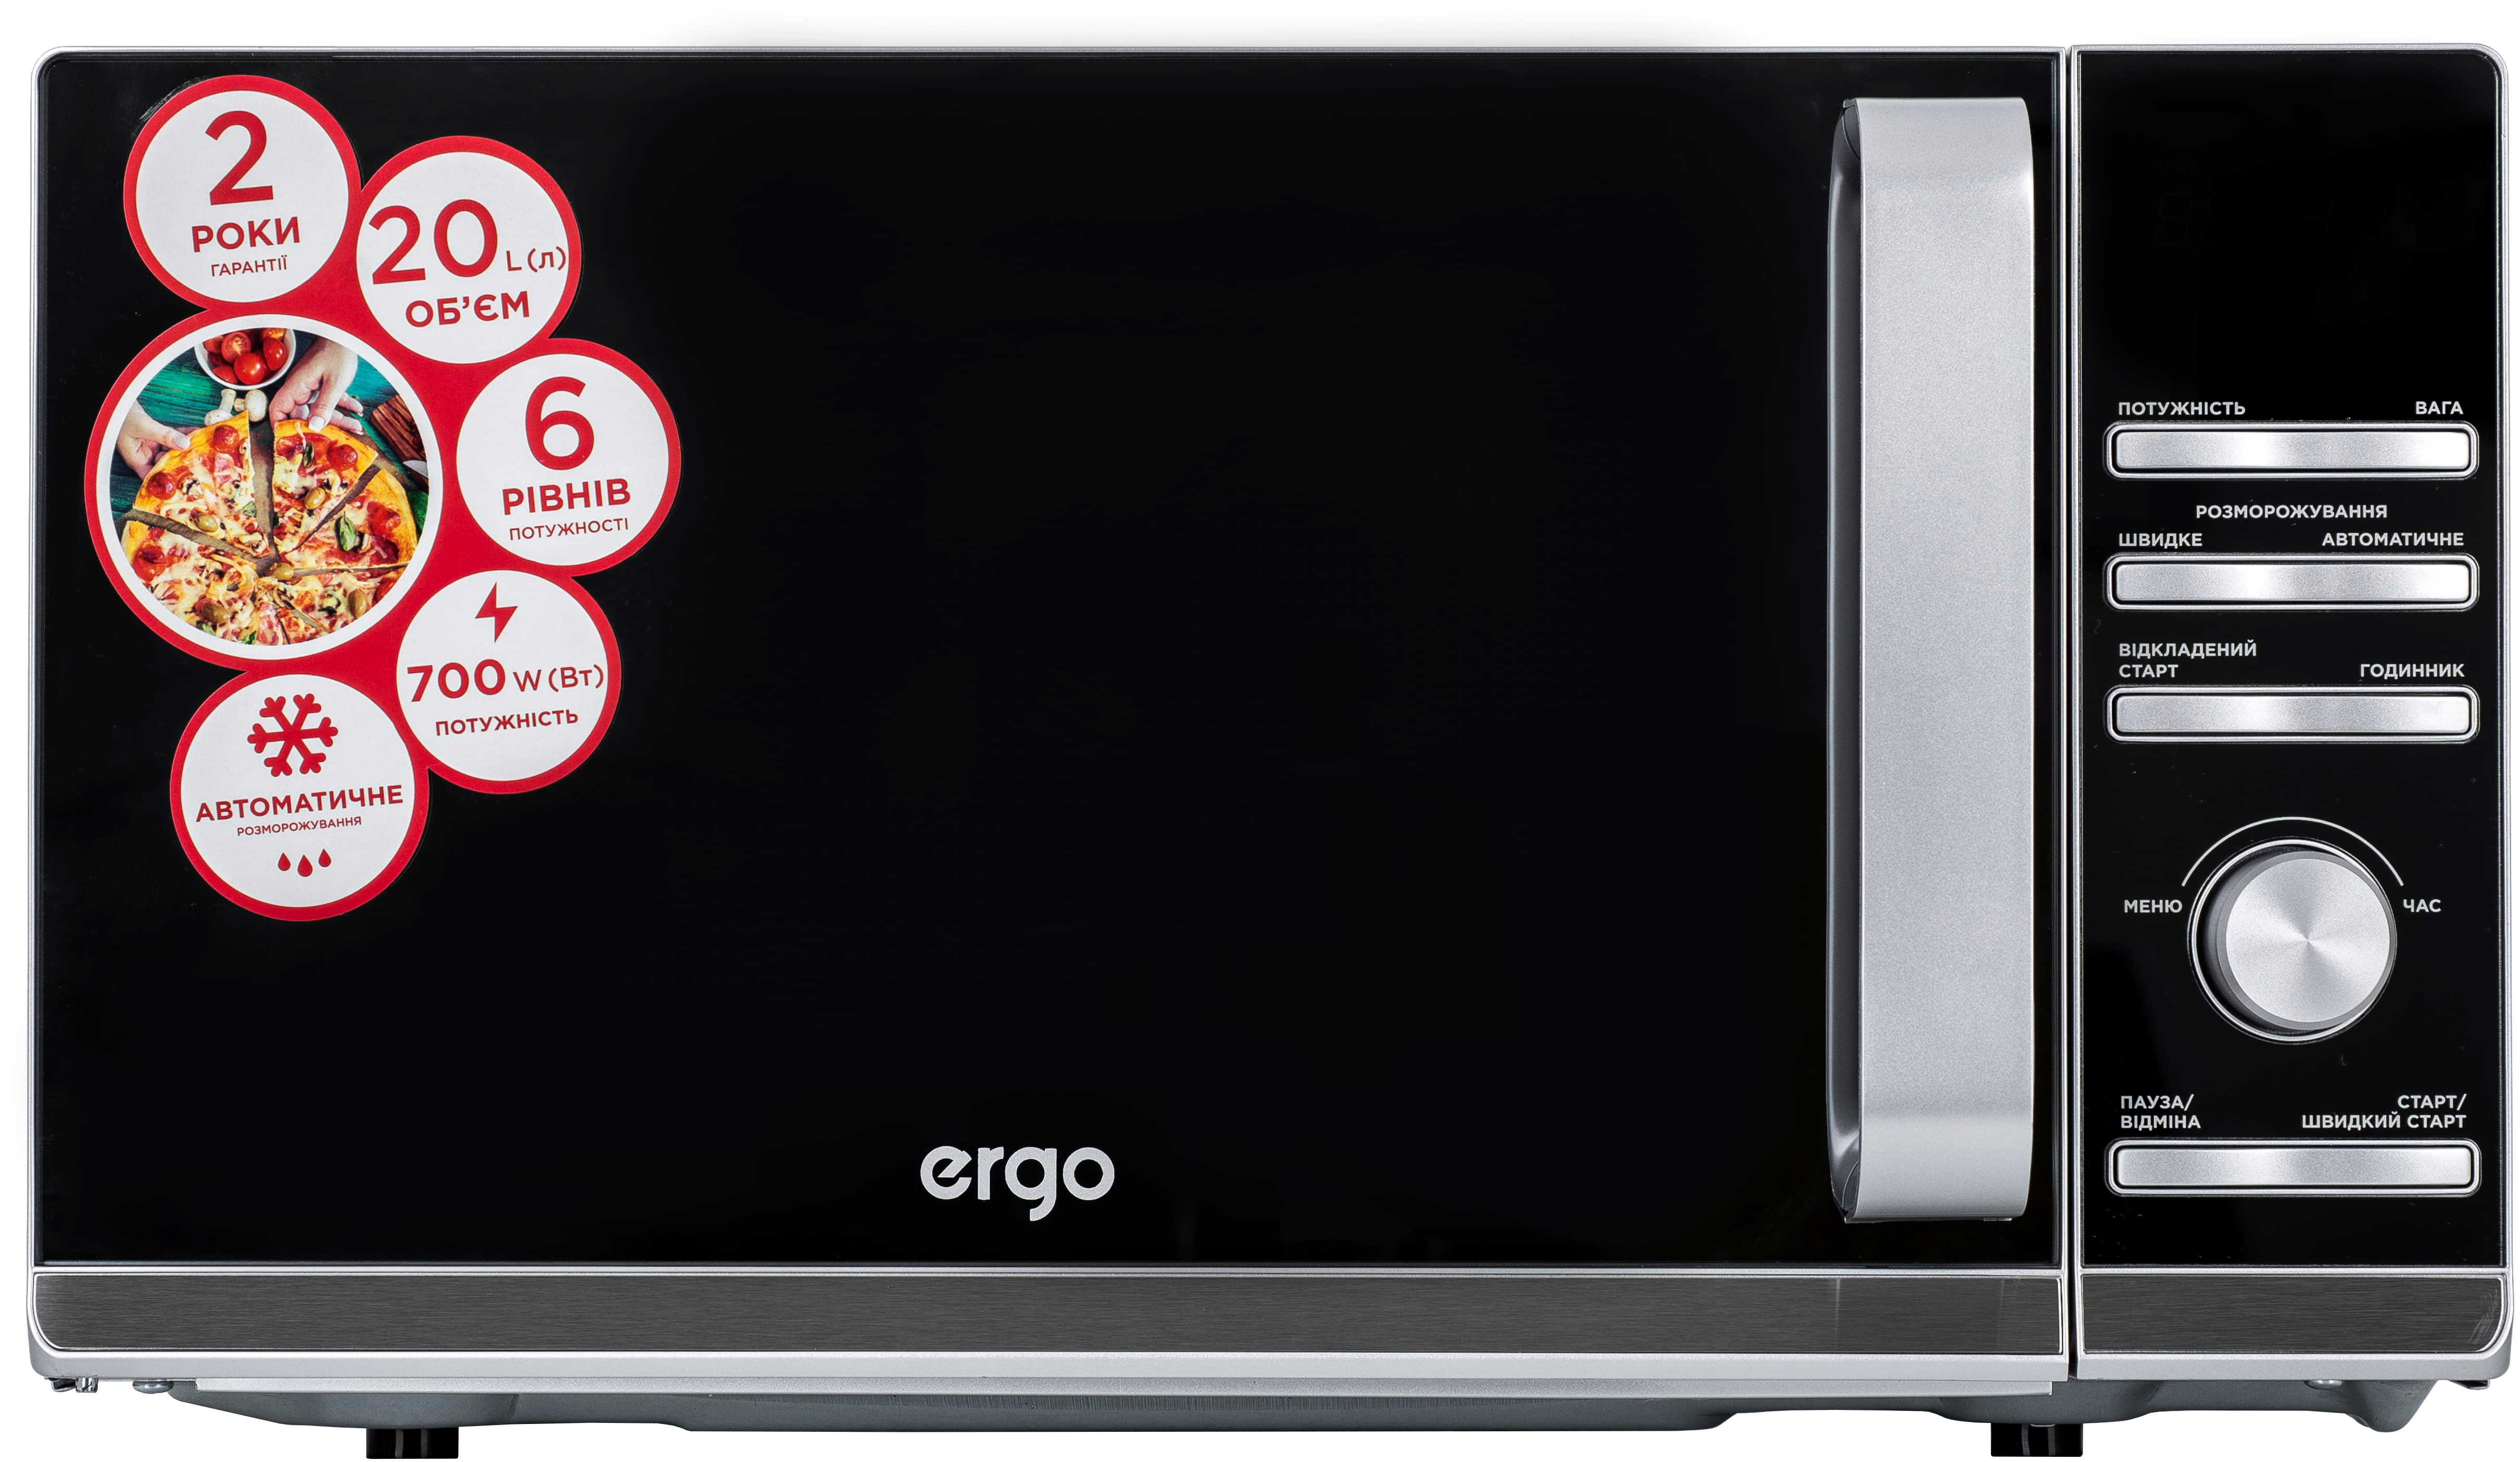 Микроволновая печь Ergo EM-2055 обзор - фото 8